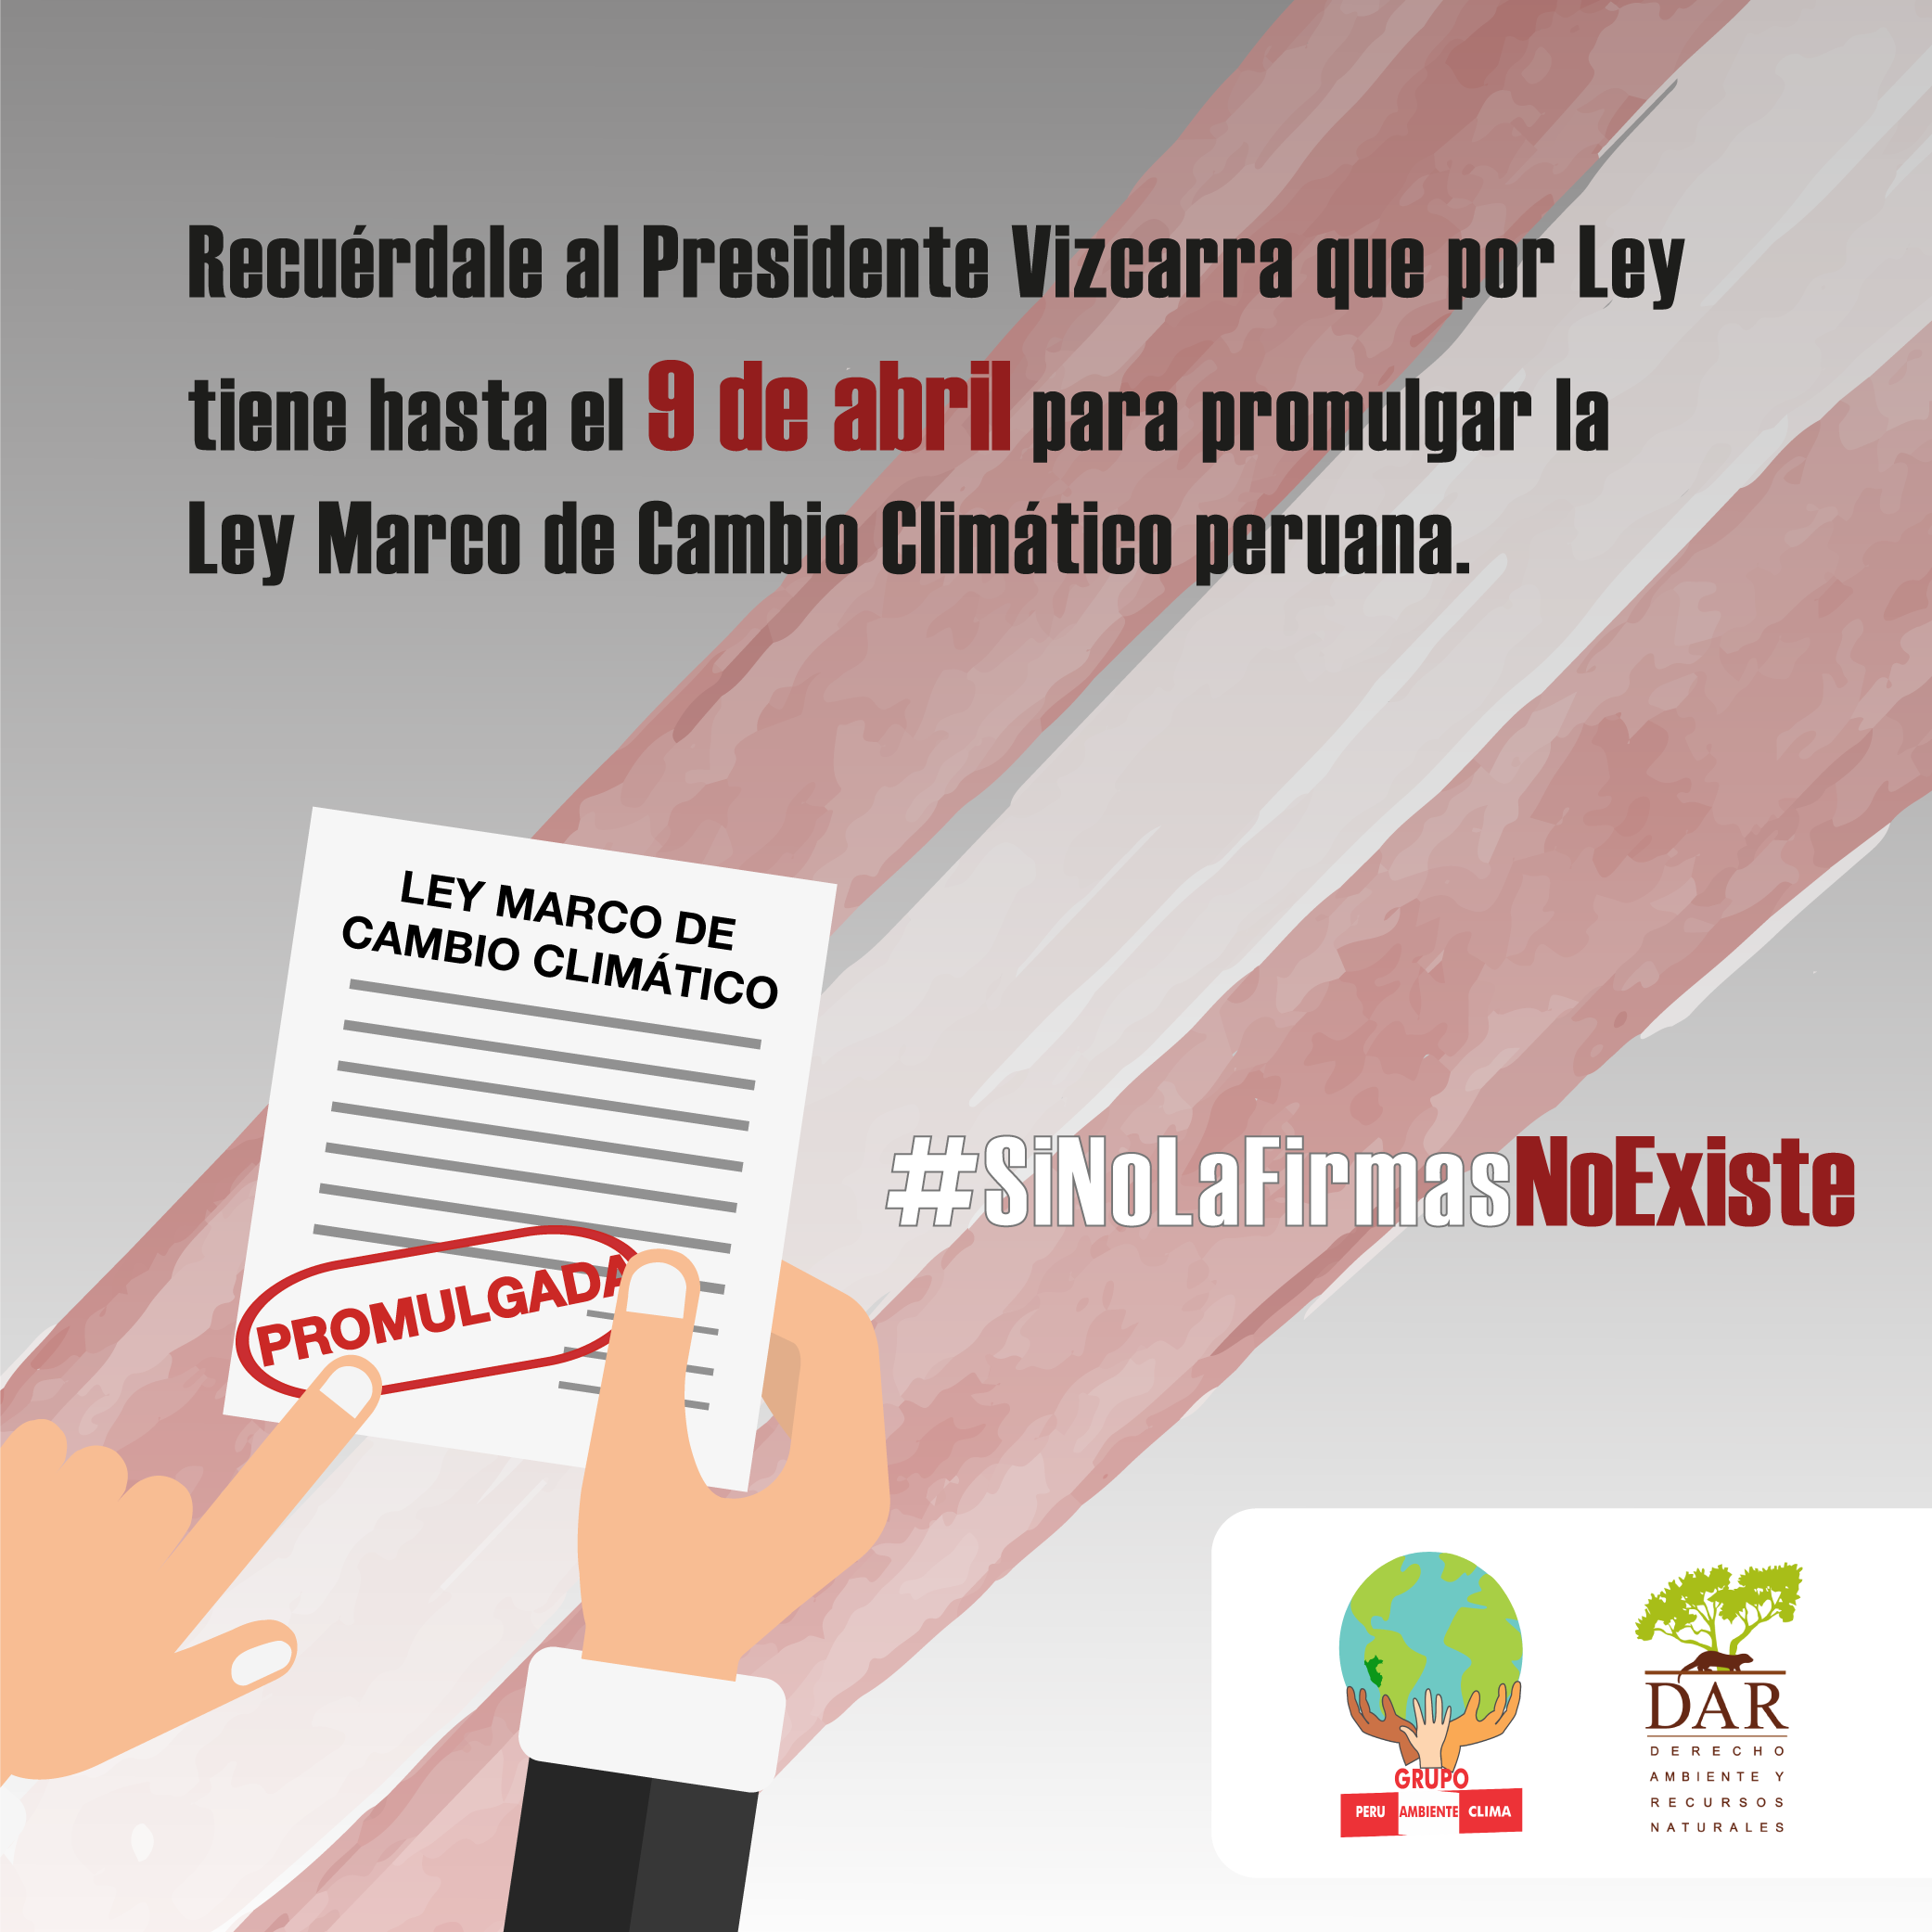 Pide al presidente Vizcarra que promulgue la Ley Marco de Cambio Climático